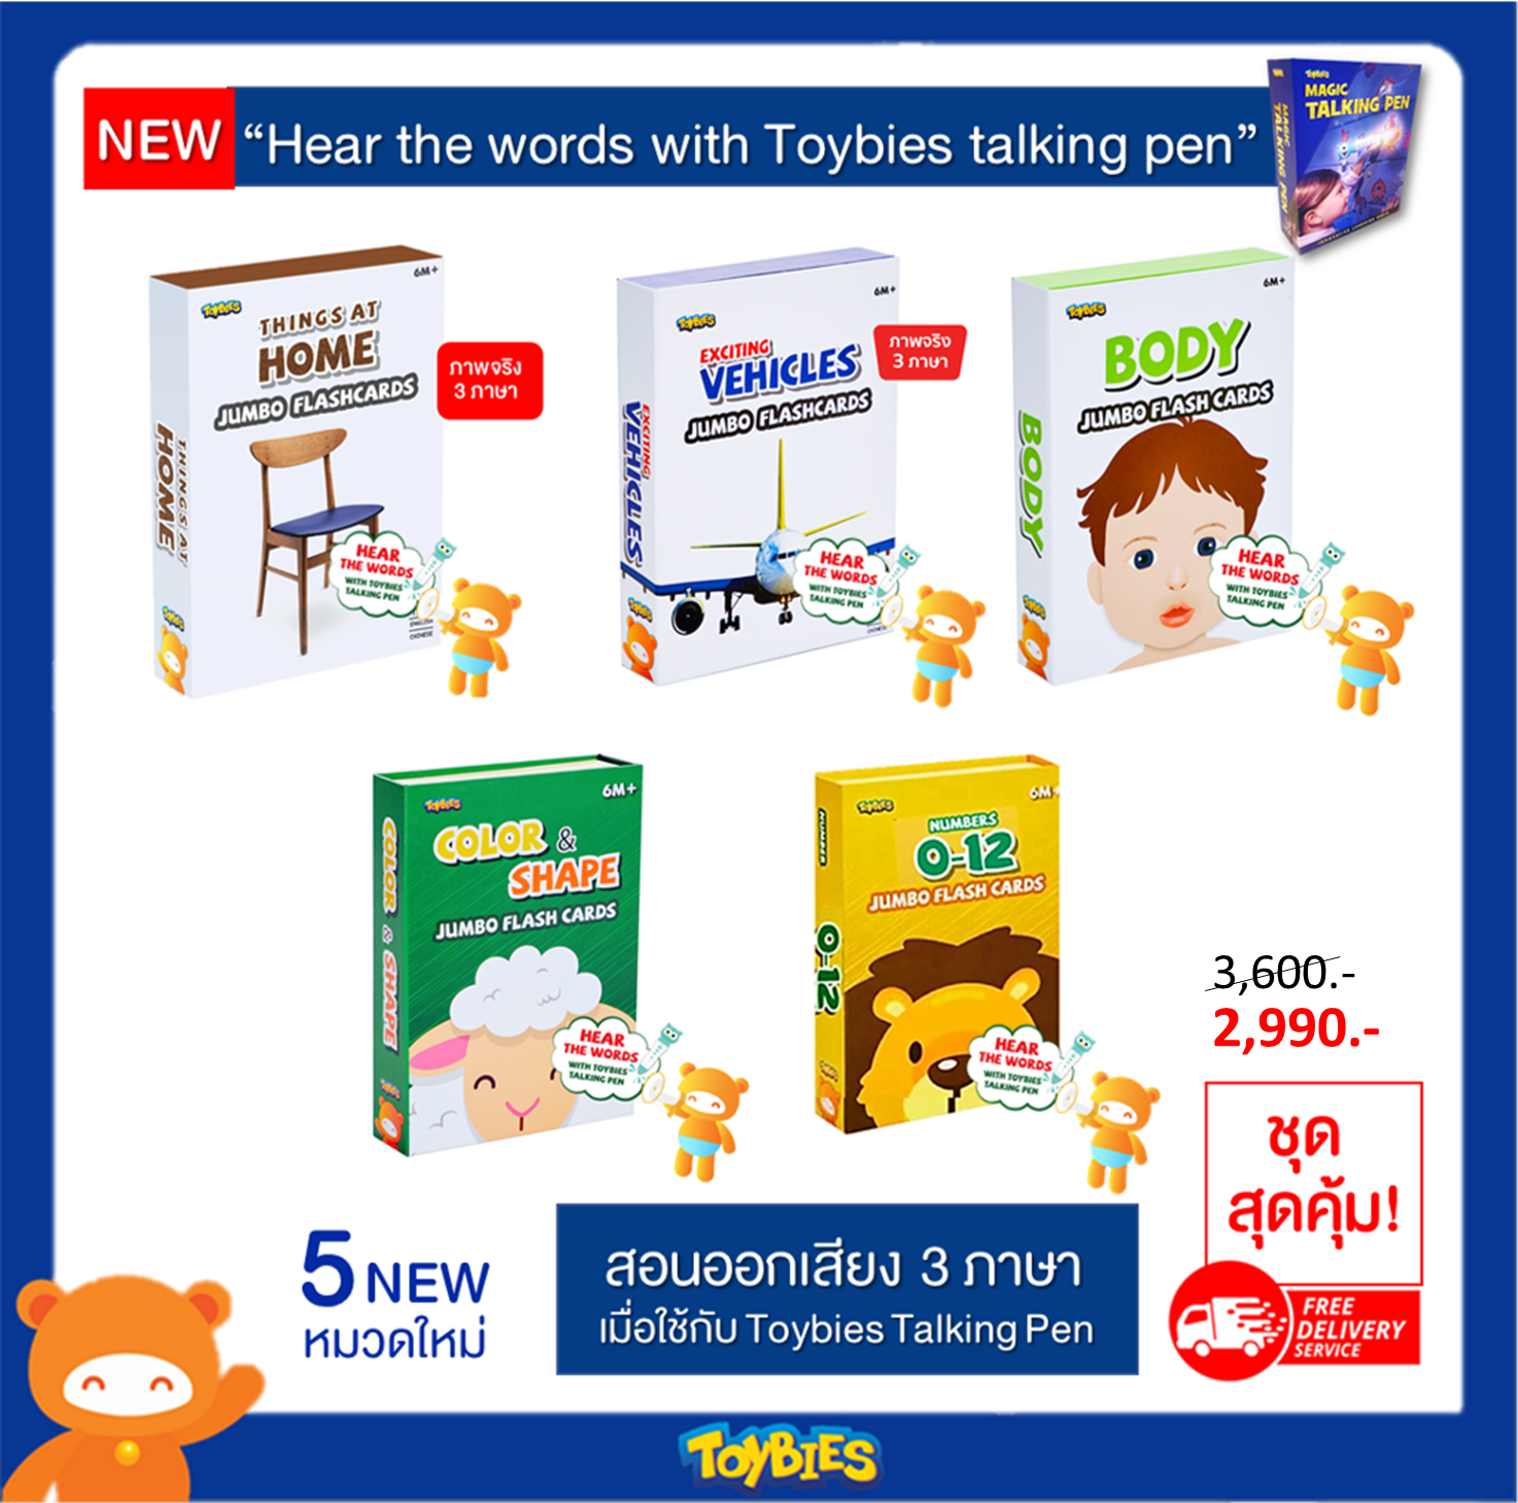 Toybies บัตรคำยักษ์ ชุด 5 หมวดใหม่ล่าสุด! พูดได้ 3 ภาษา ไทย จีน อังกฤษ เมื่อใช้ร่วมกับ Toybies Talking Pen